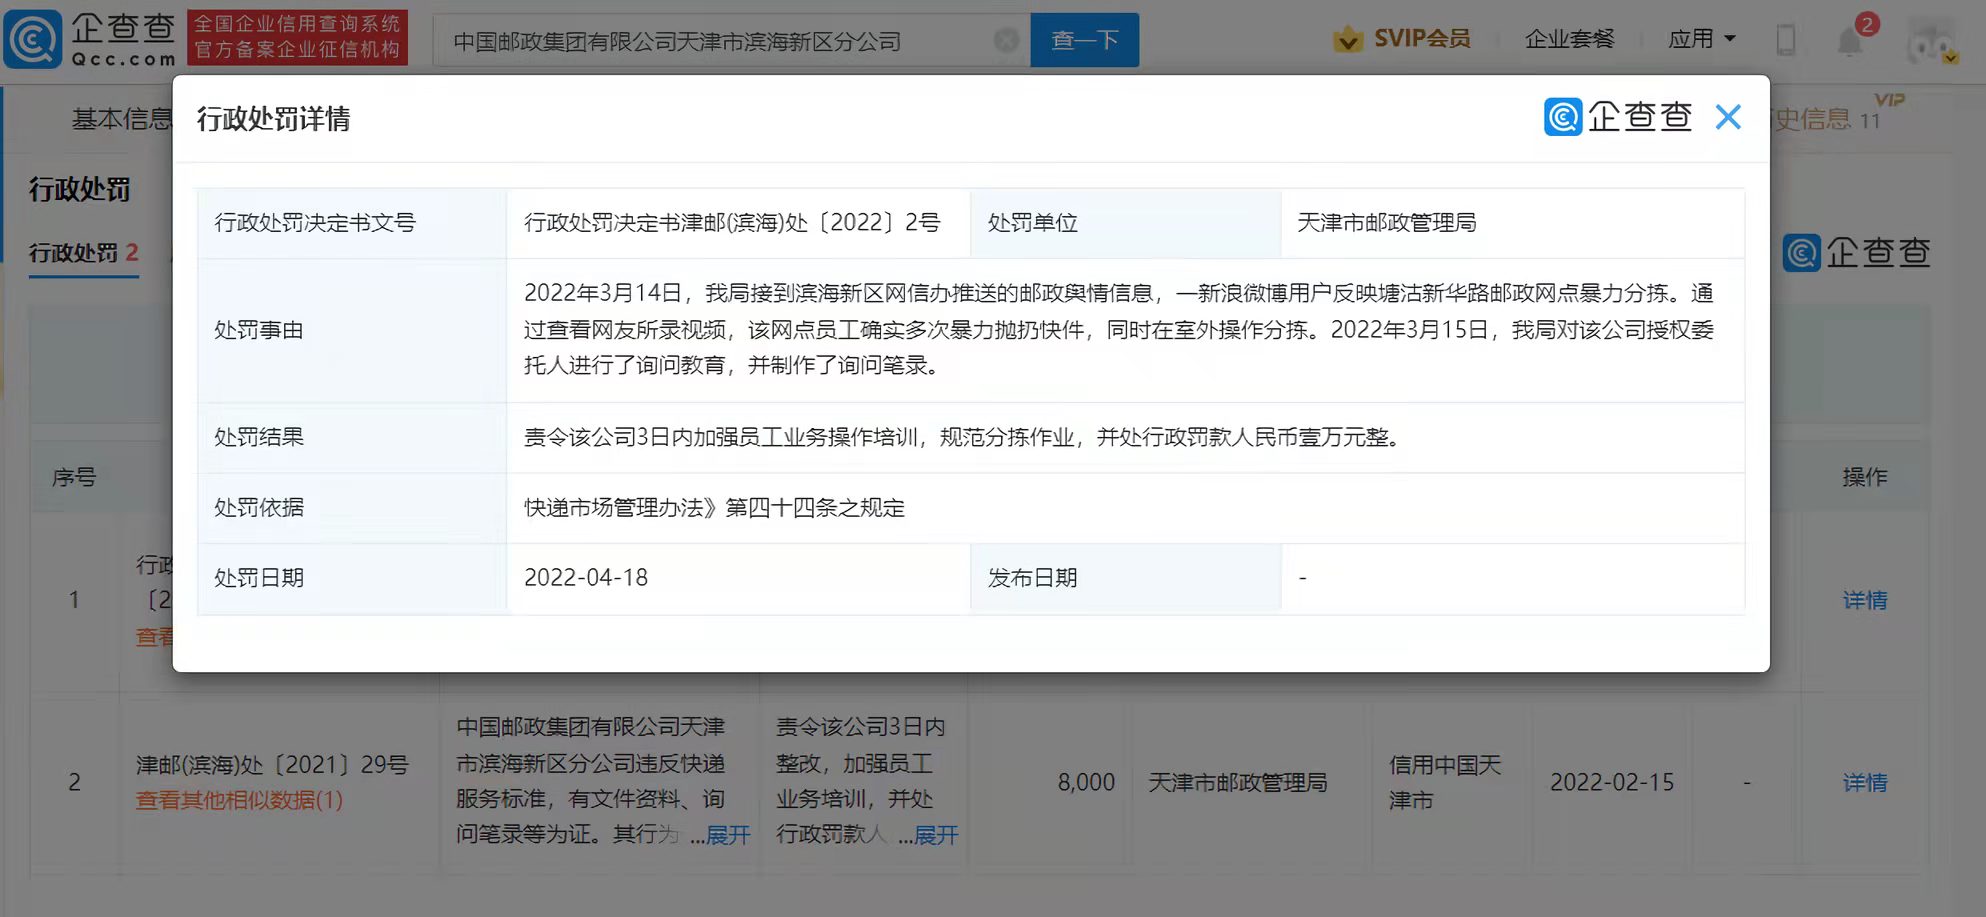 天津邮政一网点因暴力分拣快递被罚1万元